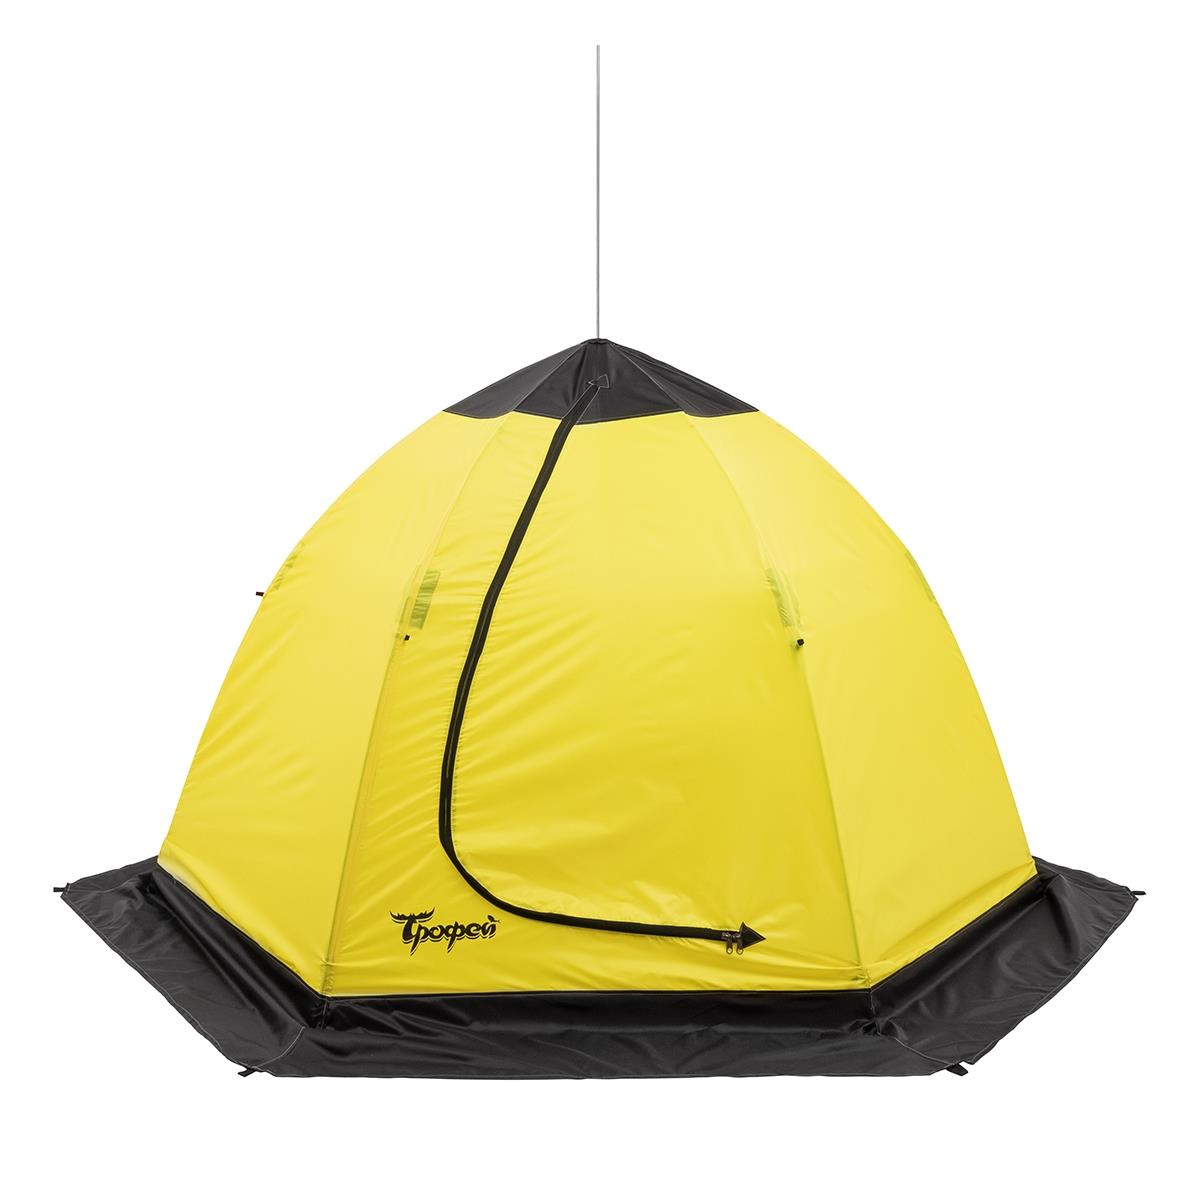 Палатка-зонт 2-местная зимняя ТРОФЕЙ палатка зимняя piramida 2 0х2 0 yellow gray tr isp 200yg трофей